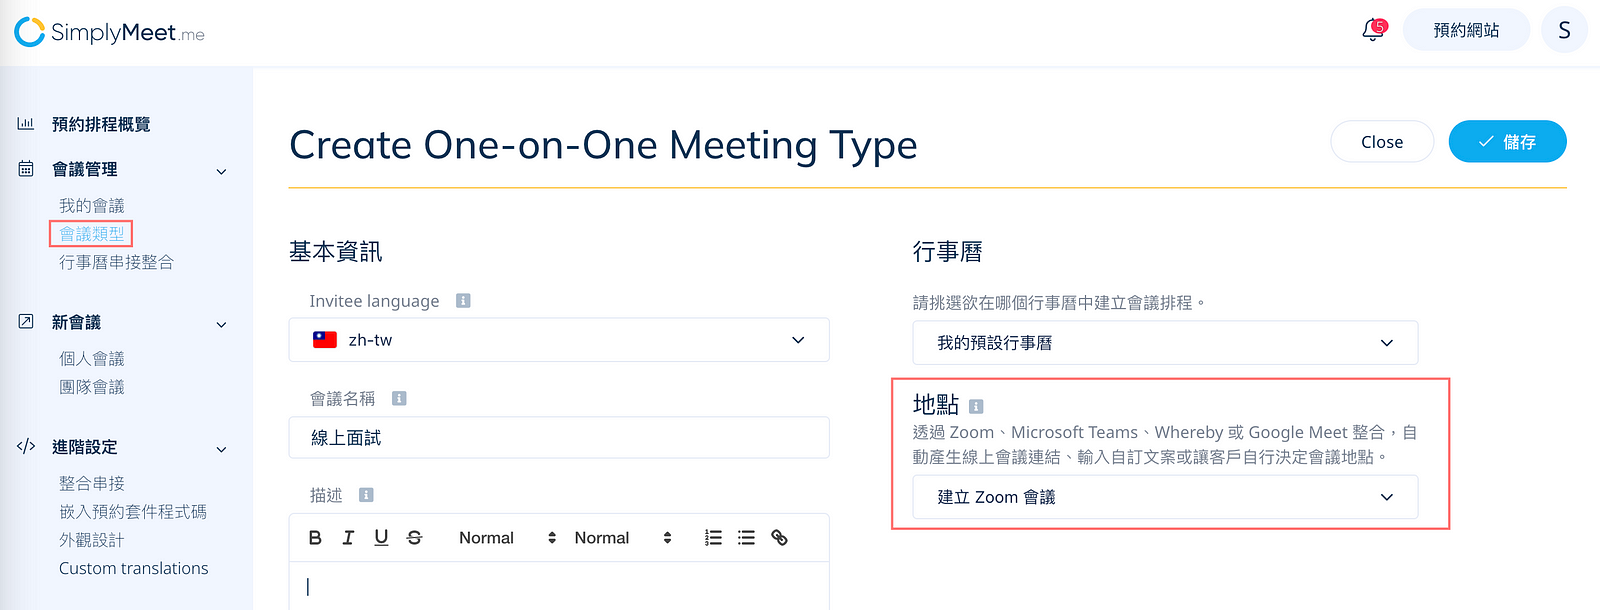 簡單易用好上手 — 透過 SimplyMeet.me 預約排程系統，自動發送 Zoom 會議連結給參加者！